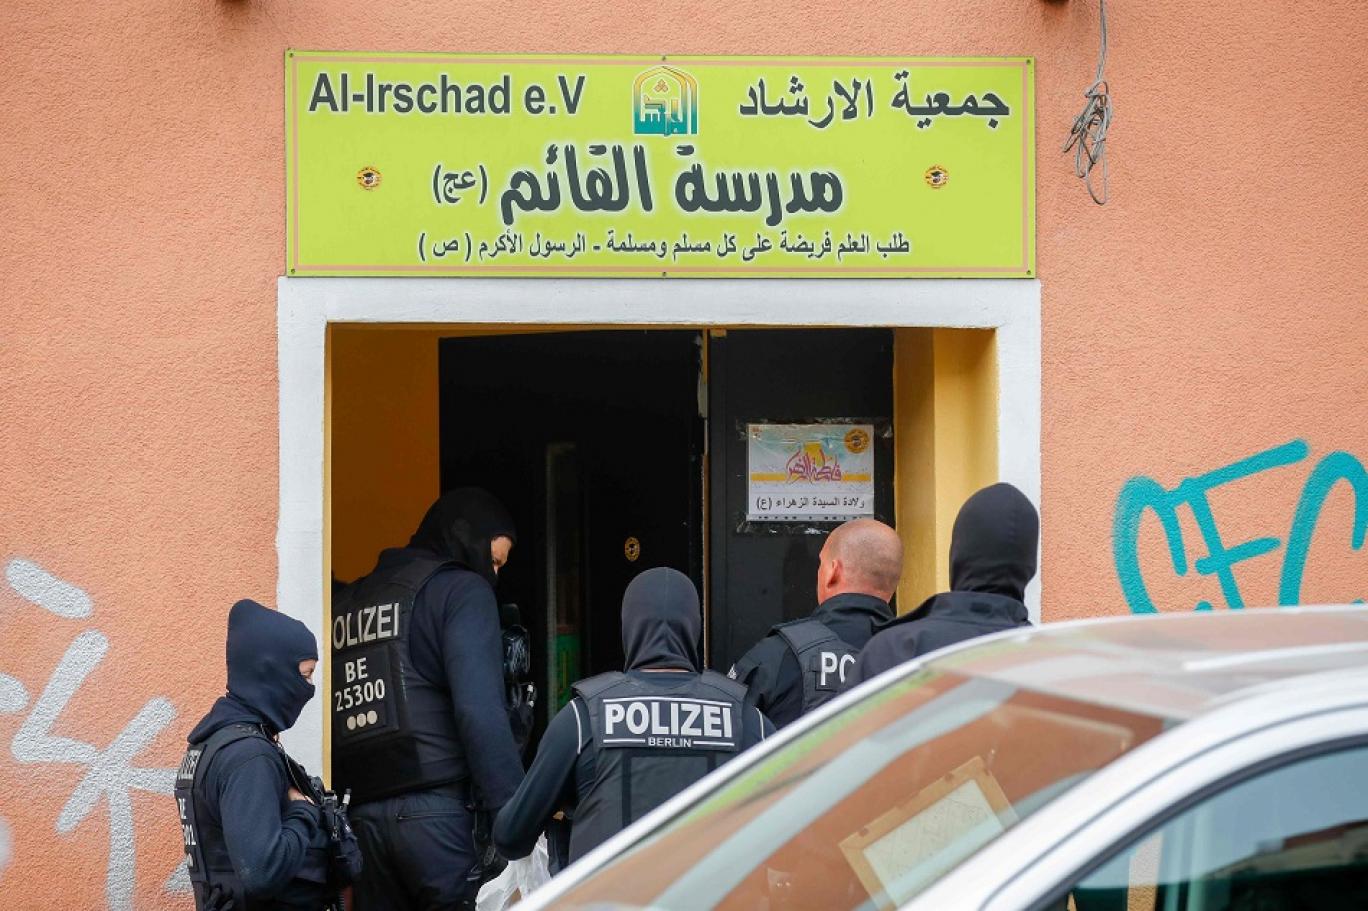 ألمانيا تحظر نشاطات "حزب الله" بالكامل على أراضيها | اندبندنت عربية